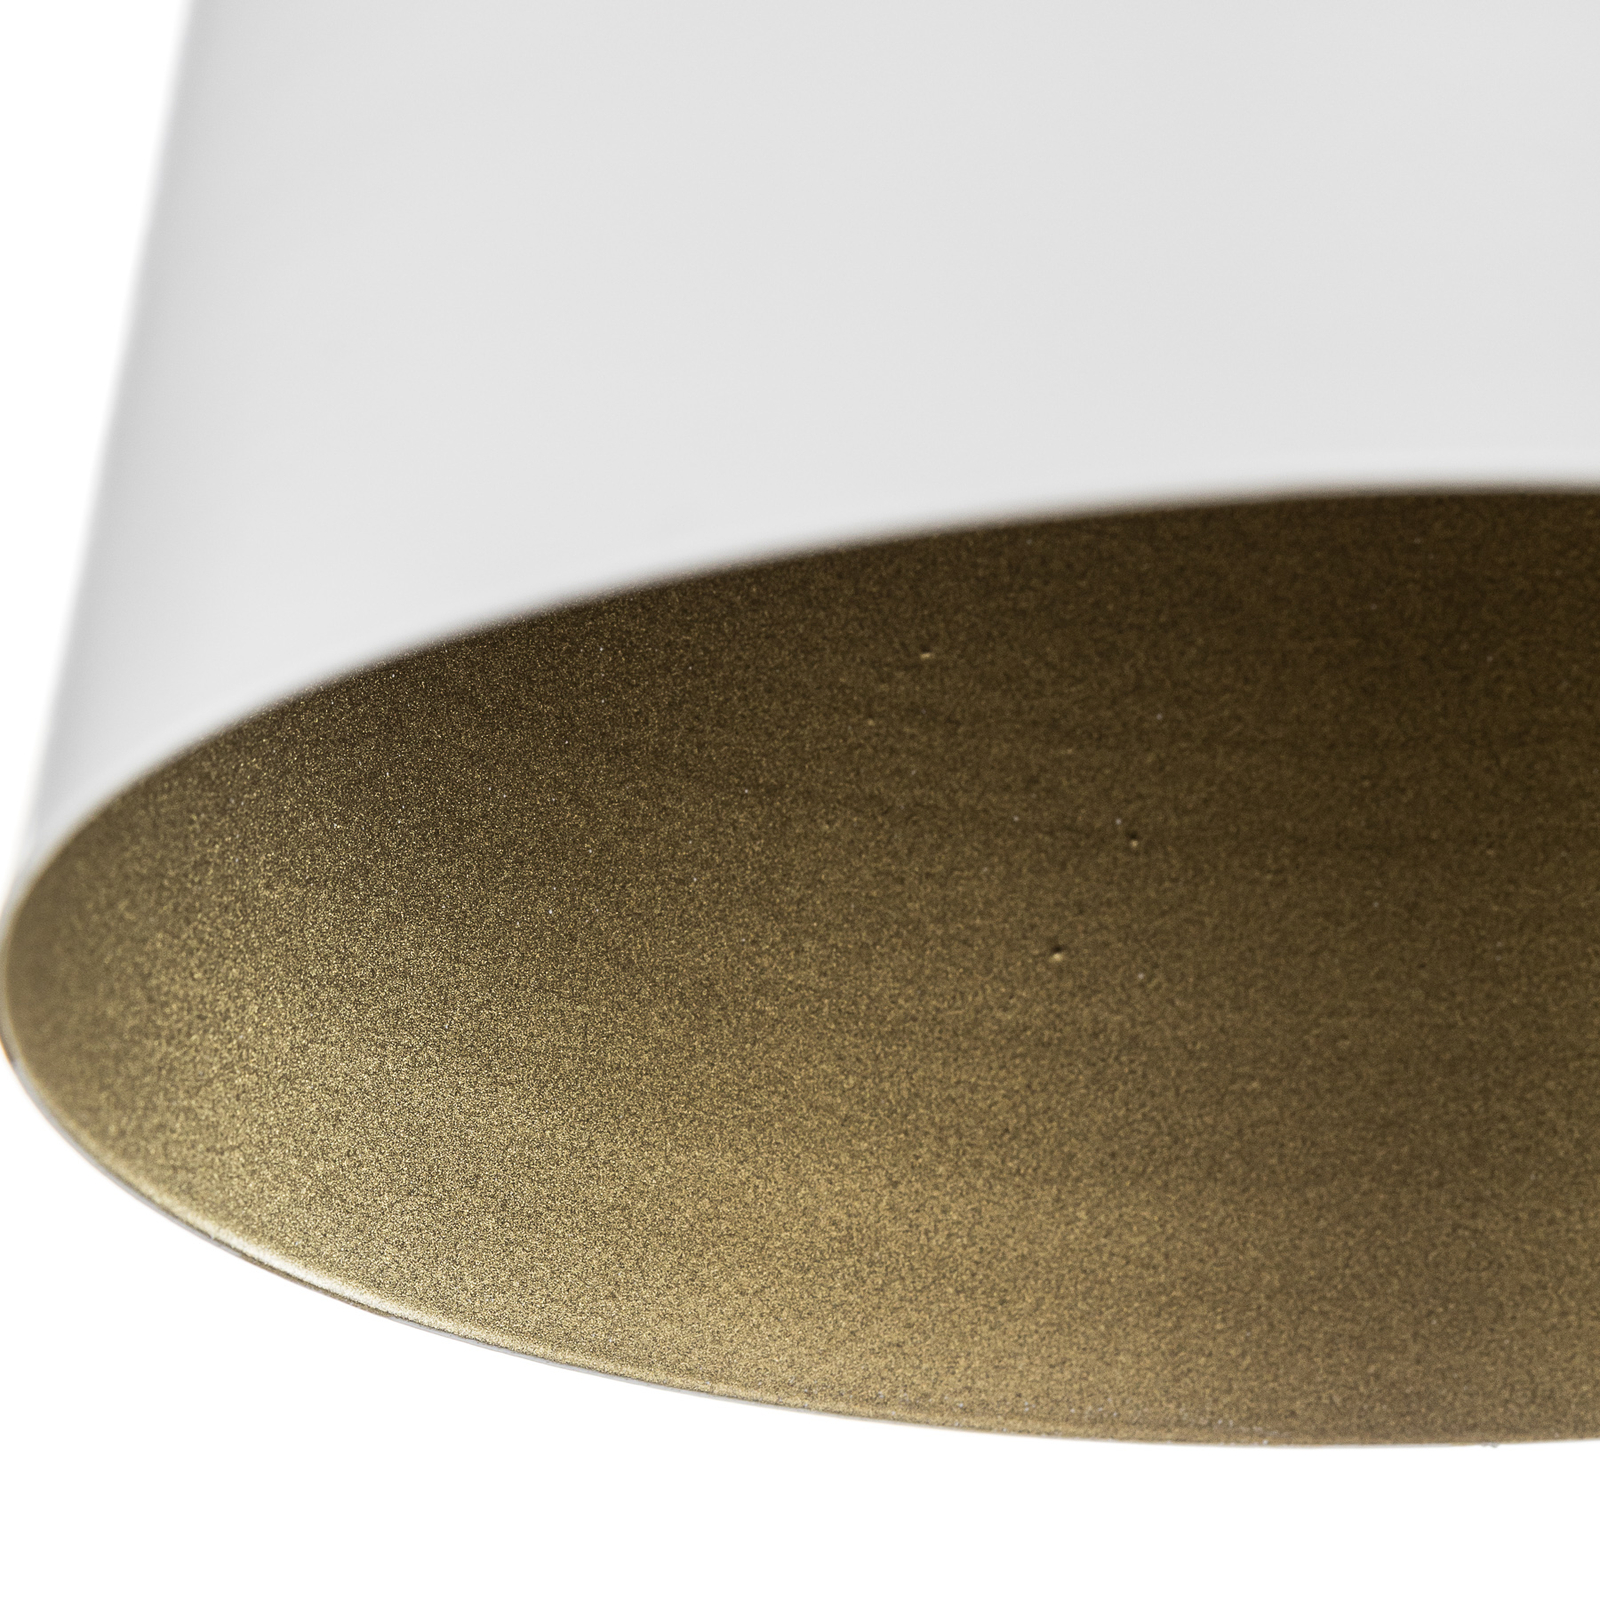 Takspotlight Prism av stål, 1 lampa, vit/guld